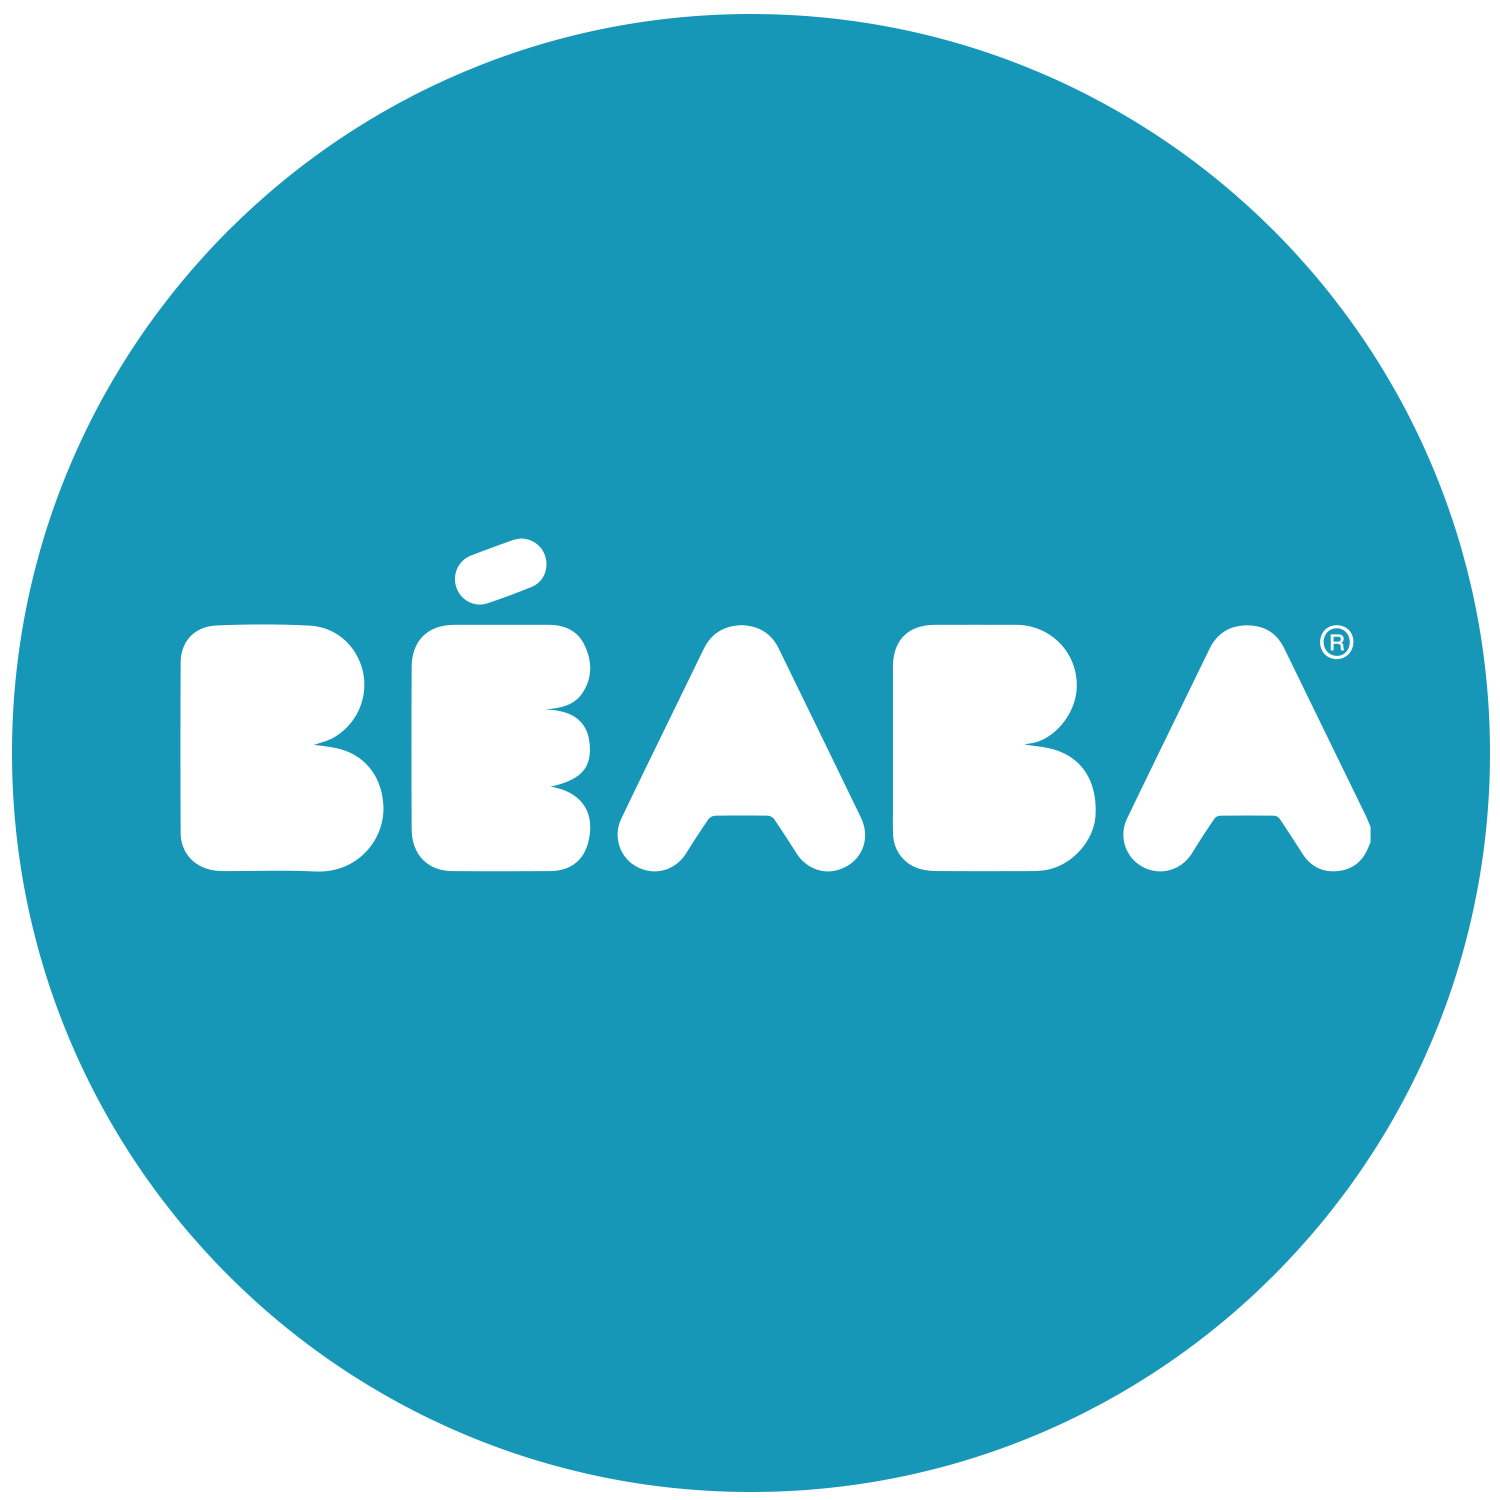 Beaba Usa logo